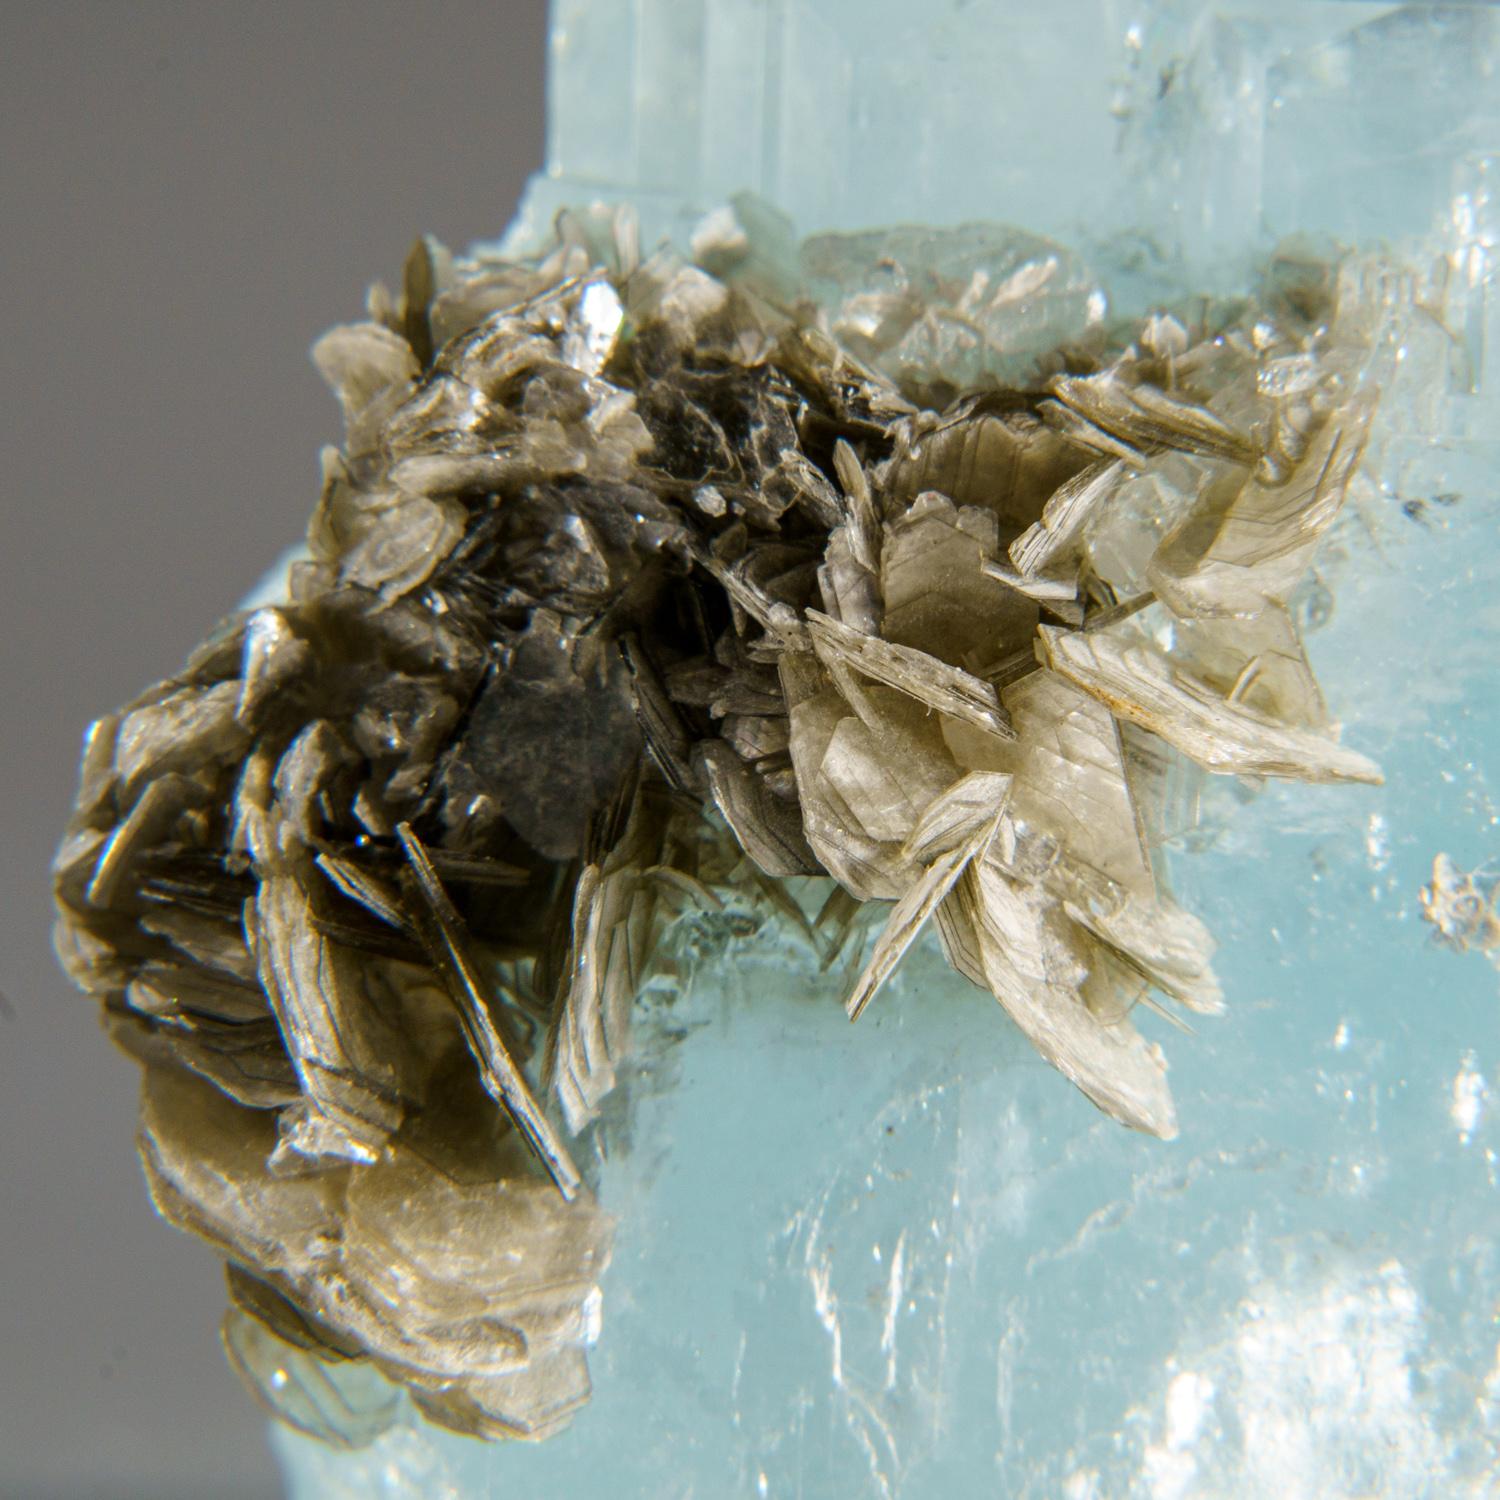 De Nagar, vallée de Hunza, Gilgit-Baltistan, Pakistan

Cristal d'aigue-marine transparent et lustré avec des cristaux de mica muscovite argentés. Les aigue-marines sont super gemmes avec une forme hexagonale bien définie et des terminaisons